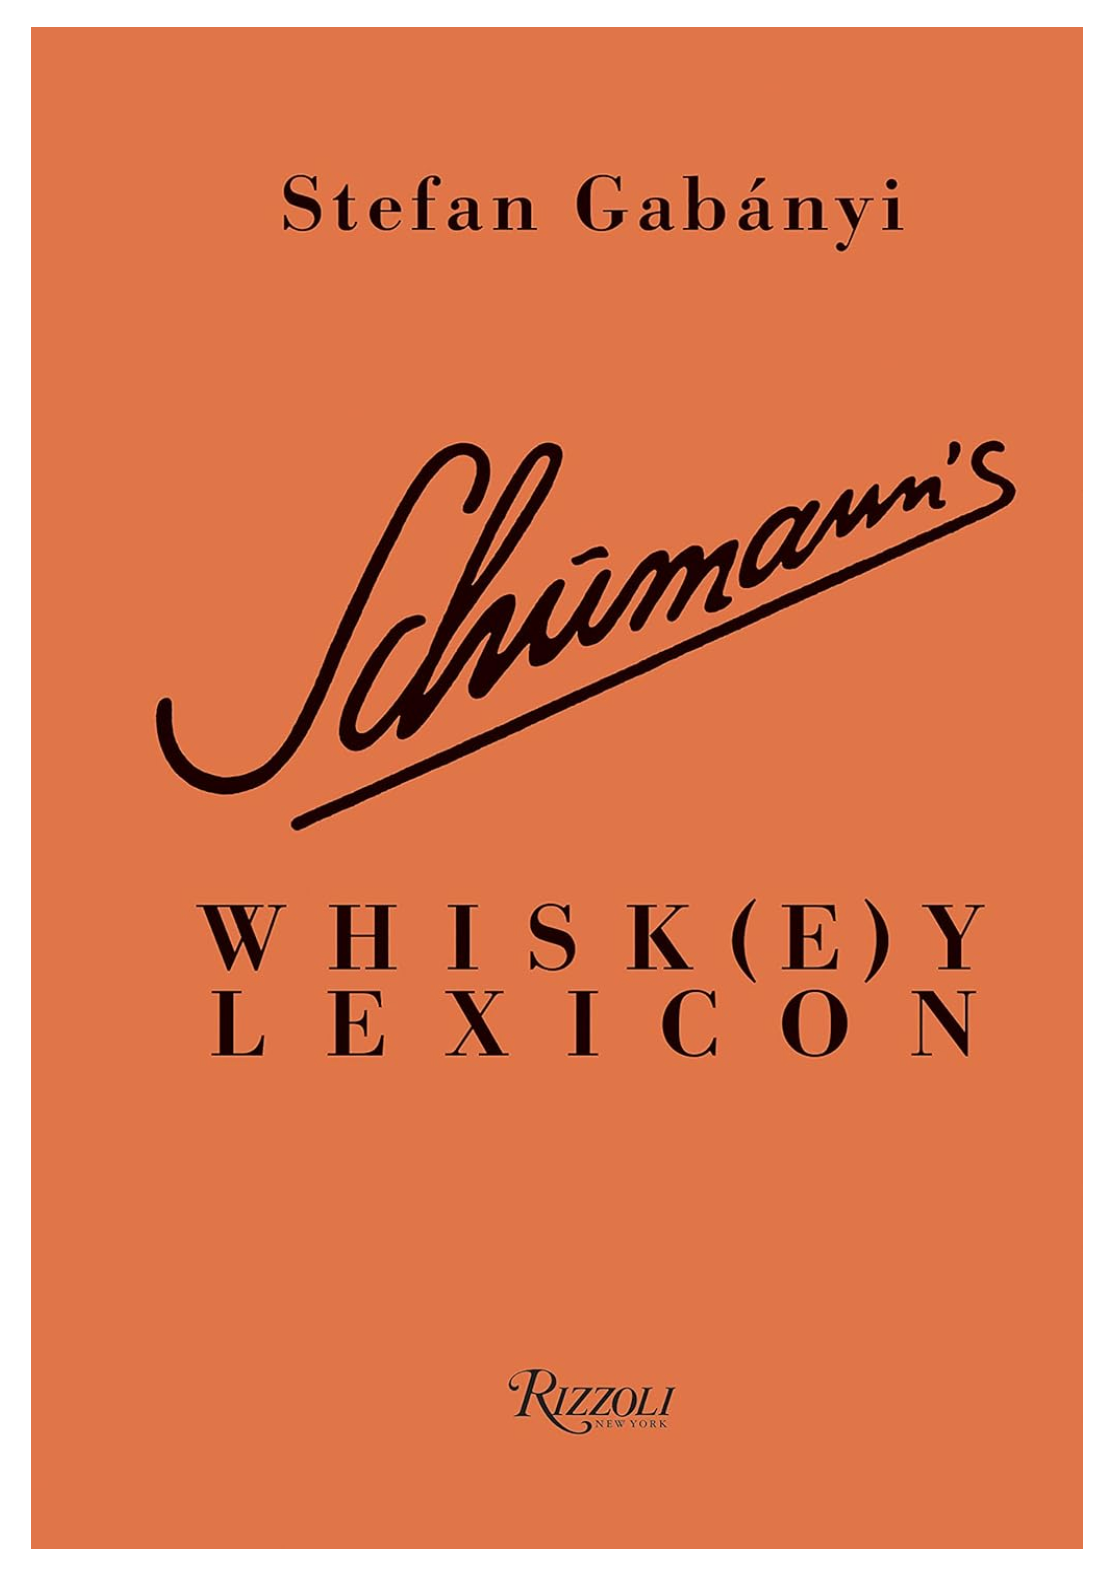 Schumann's Whiskey Lexicon